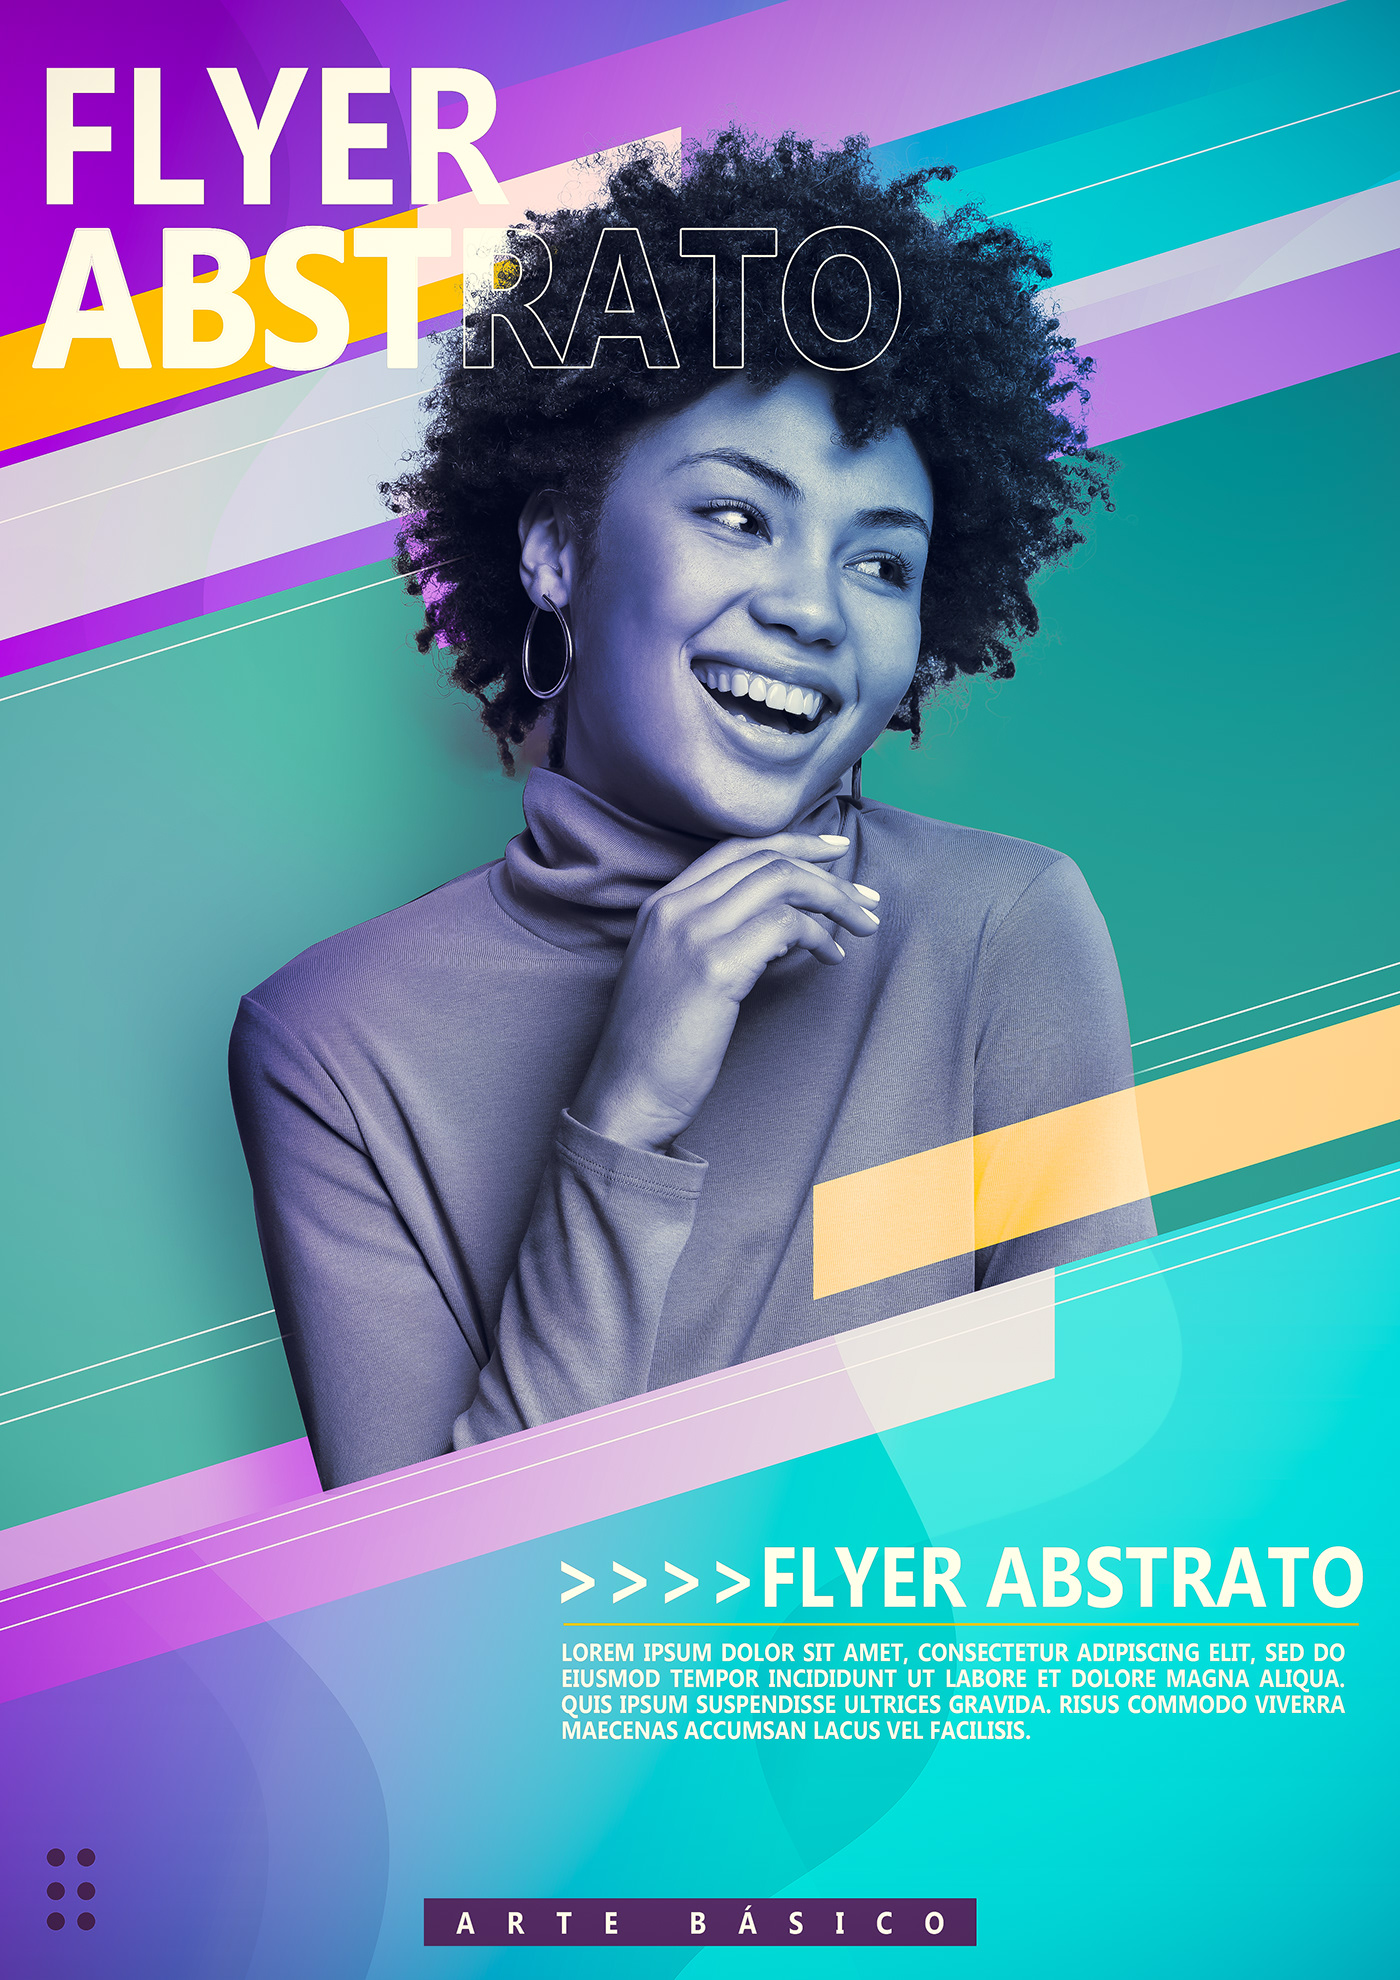 Flyre Design flyer Social media post visual identity abstract flyer